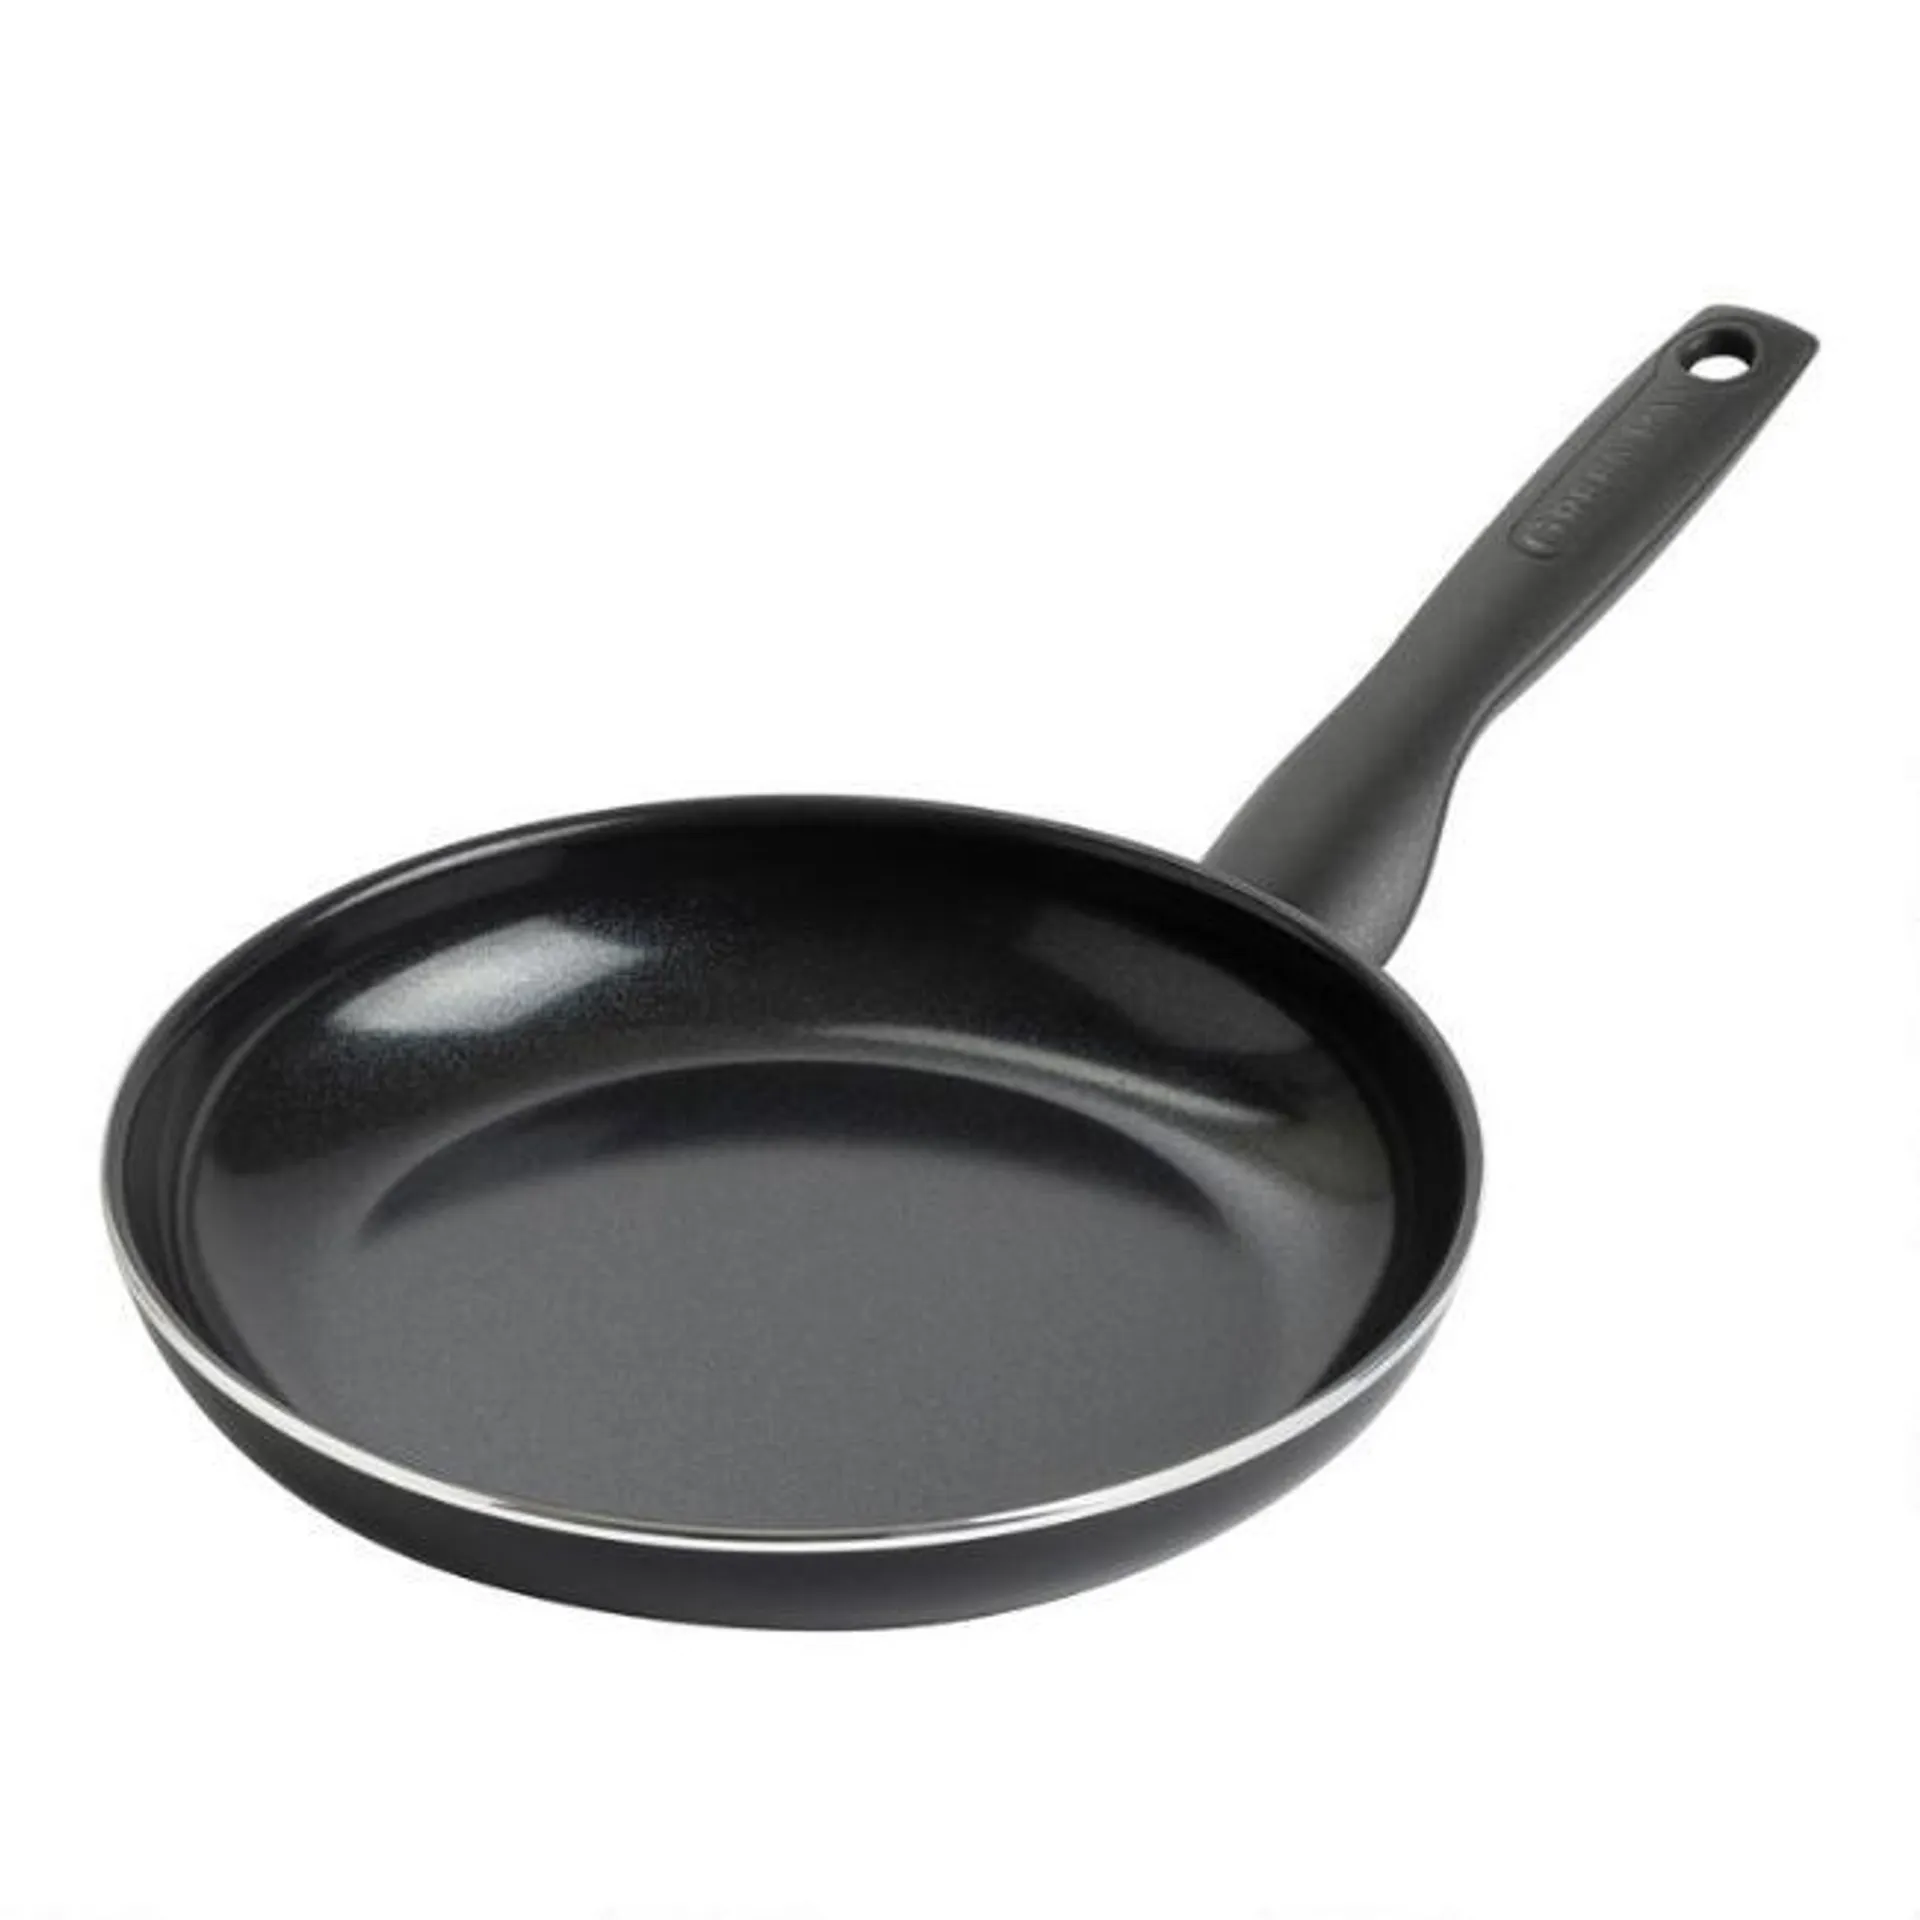 GreenPan Black Simply Easy Nonstick Ceramic Frying Pan